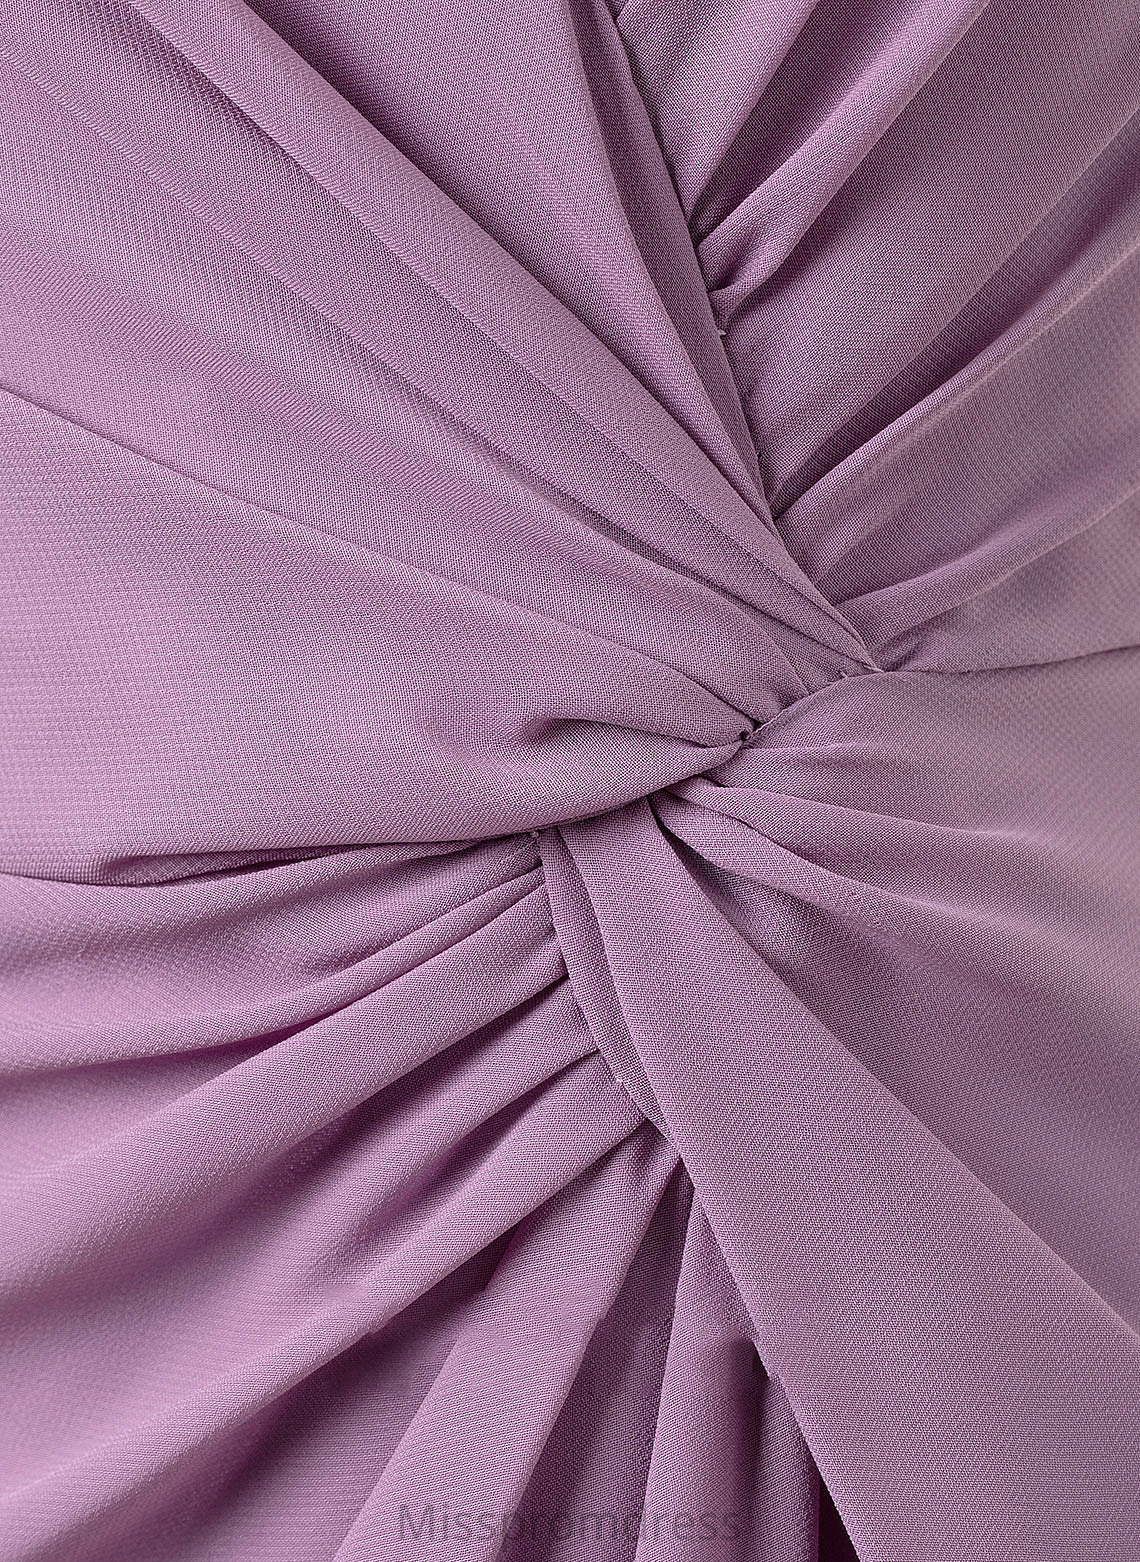 Fabric Ruffle SplitFront Silhouette Length Floor-Length Neckline V-neck A-Line Embellishment Mariam A-Line/Princess Bridesmaid Dresses